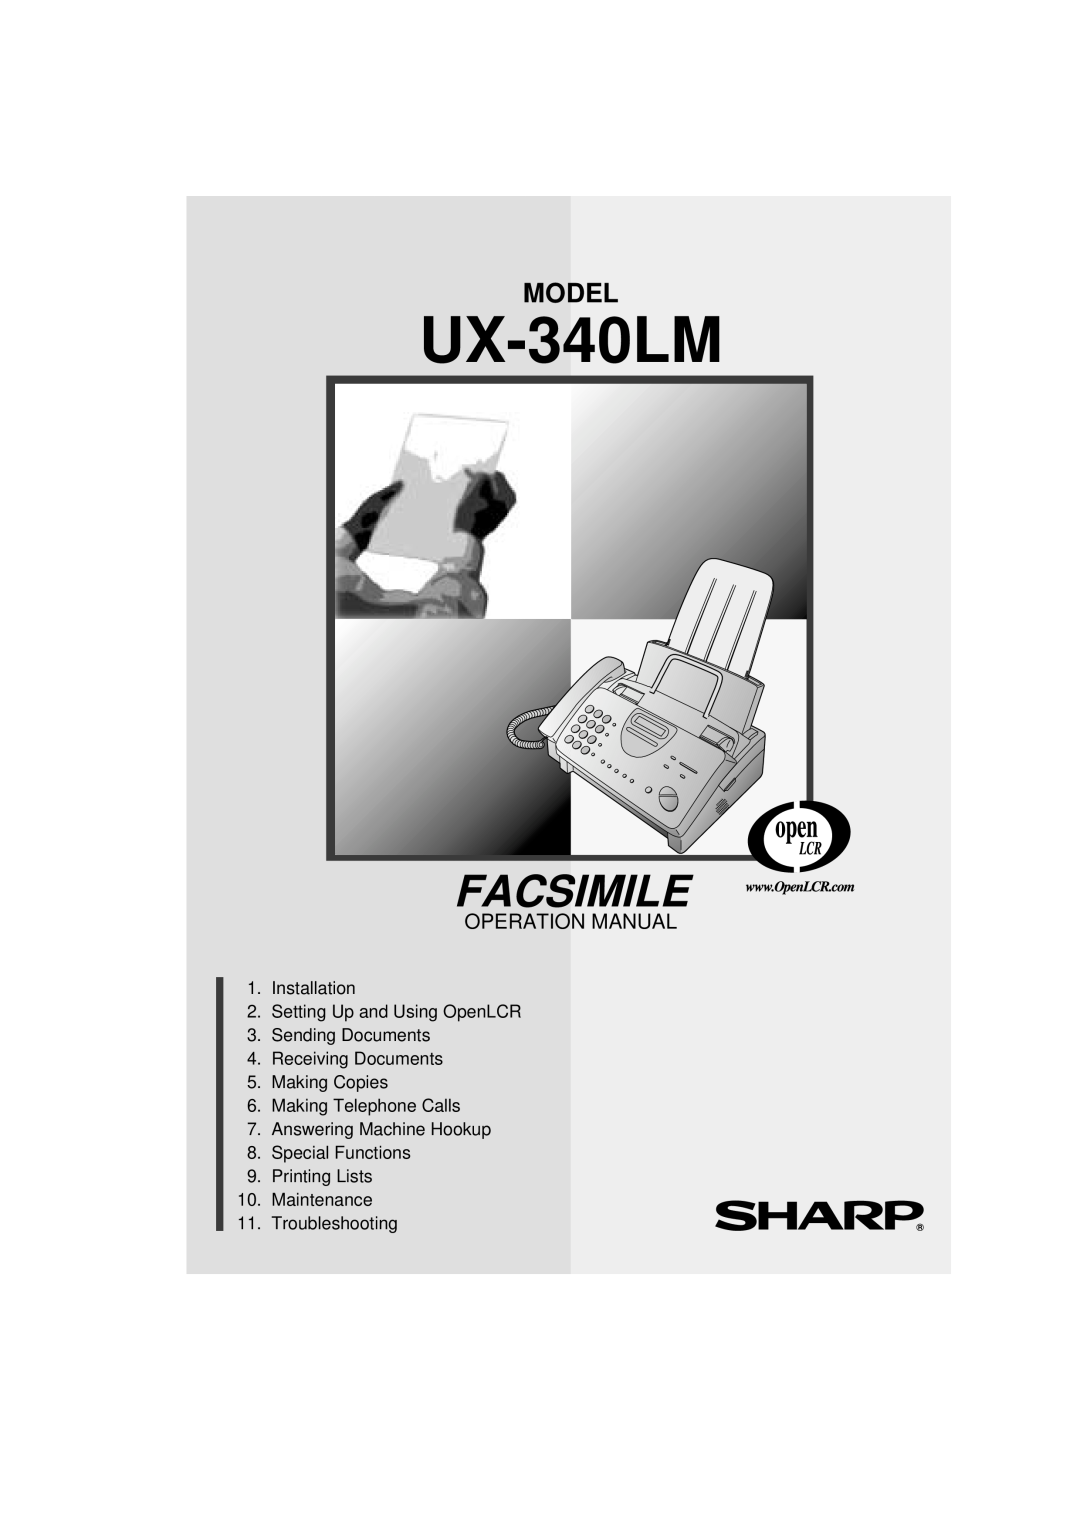 Sharp UX-340LM manual Facsimile, Model, Operation Manual 